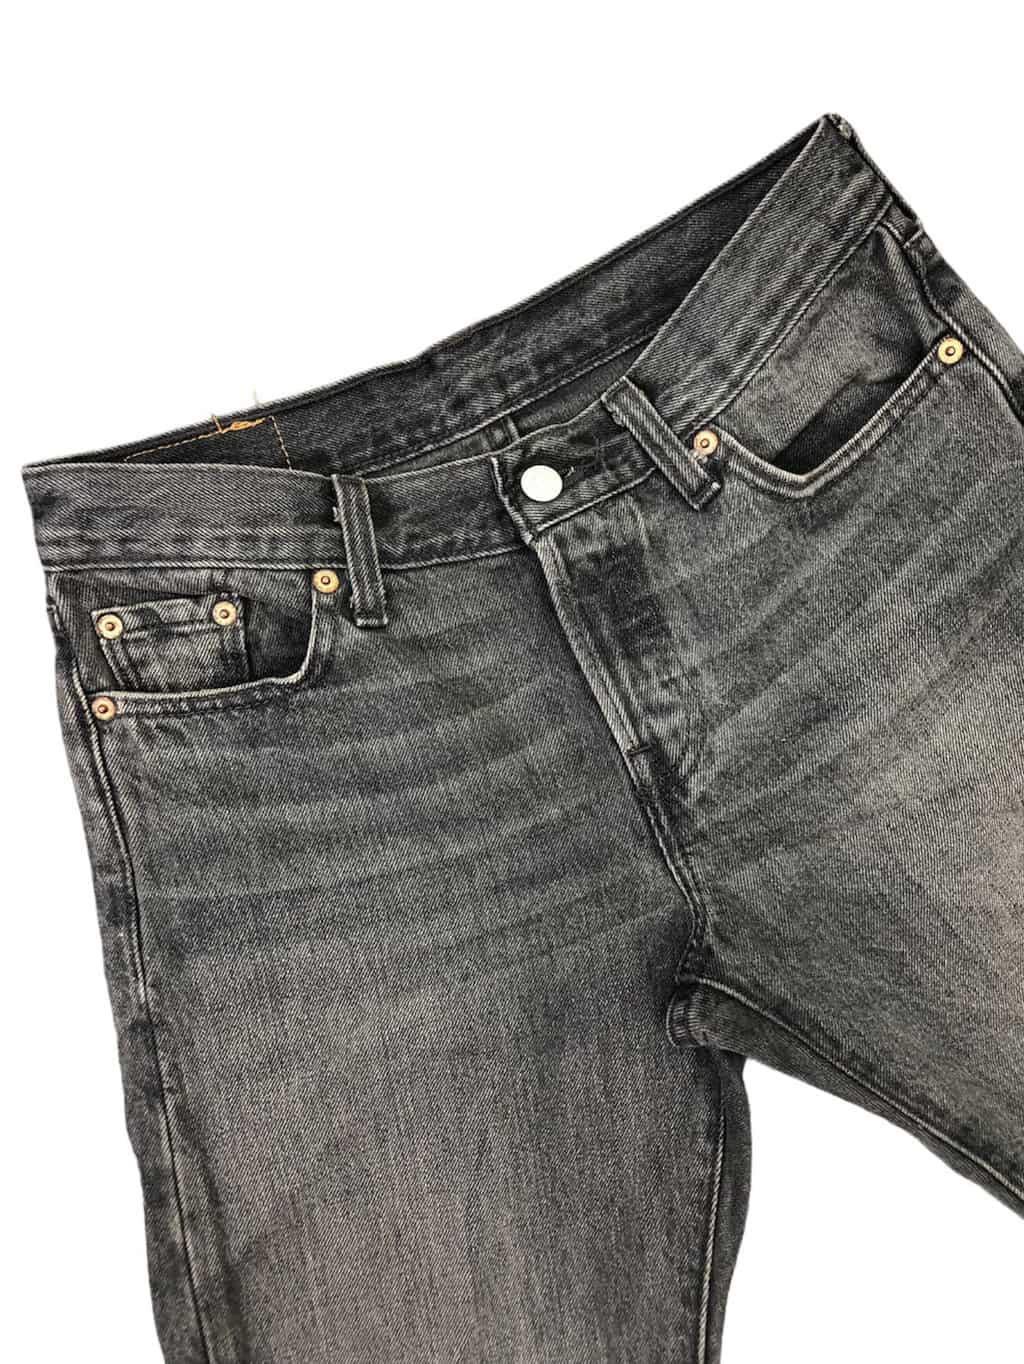 Grey Stonewash Denim Levis 501 Jeans - St Cyr Vintage